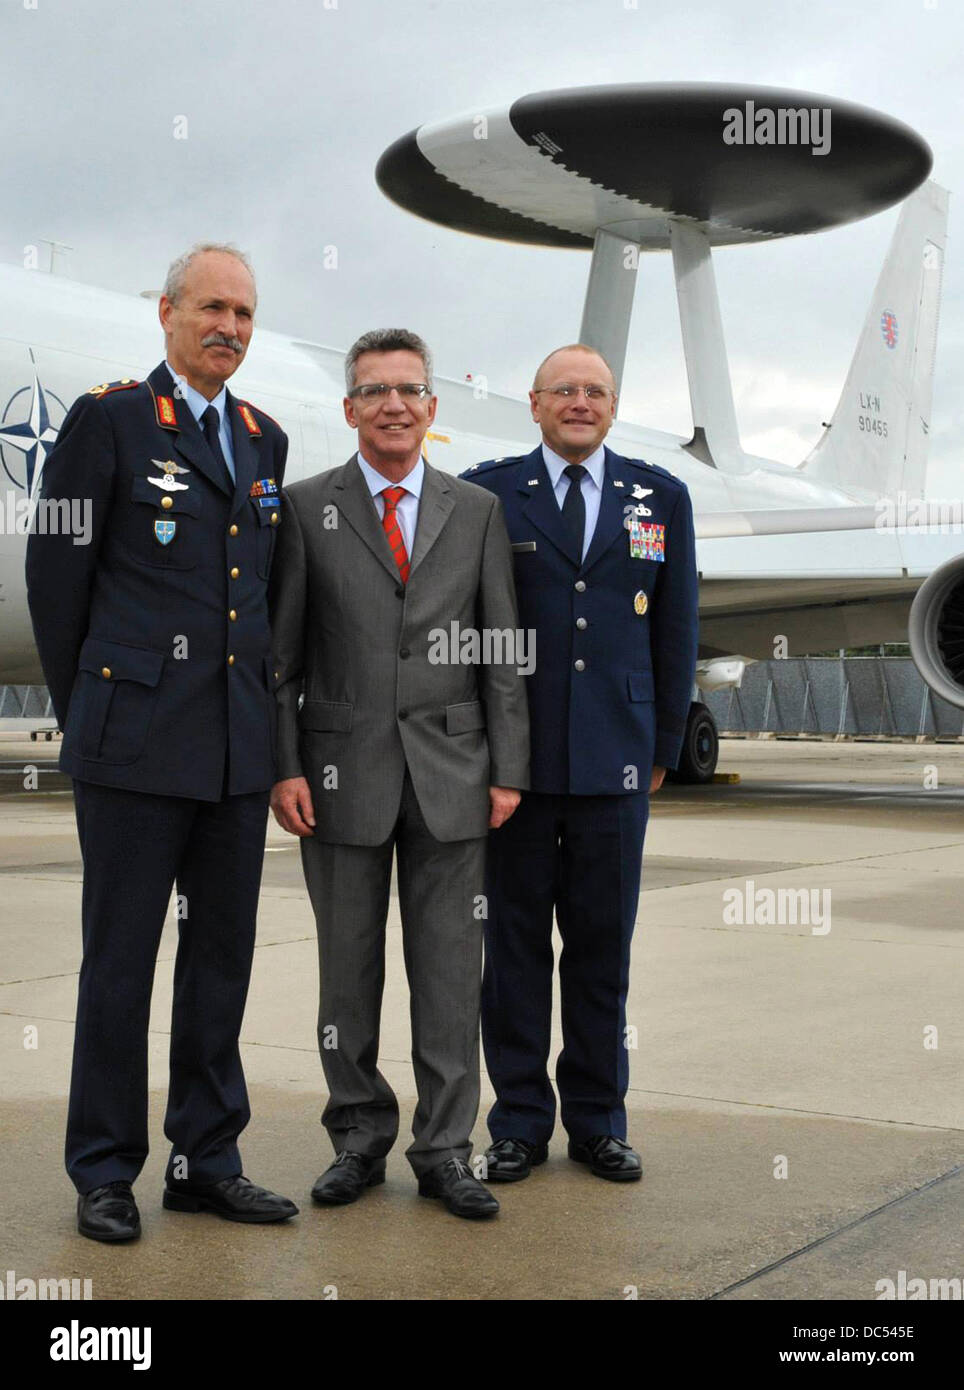 Der Bundesminister der Verteidigung, Thomas de Maiziere, steht mit Christina. Andrew M. Mueller (rechts) und Generalmajor Jochen Both (links) 8. August 2013, während eines Besuchs in Geilenkirchen NATO Air Base in Deutschland. Stockfoto